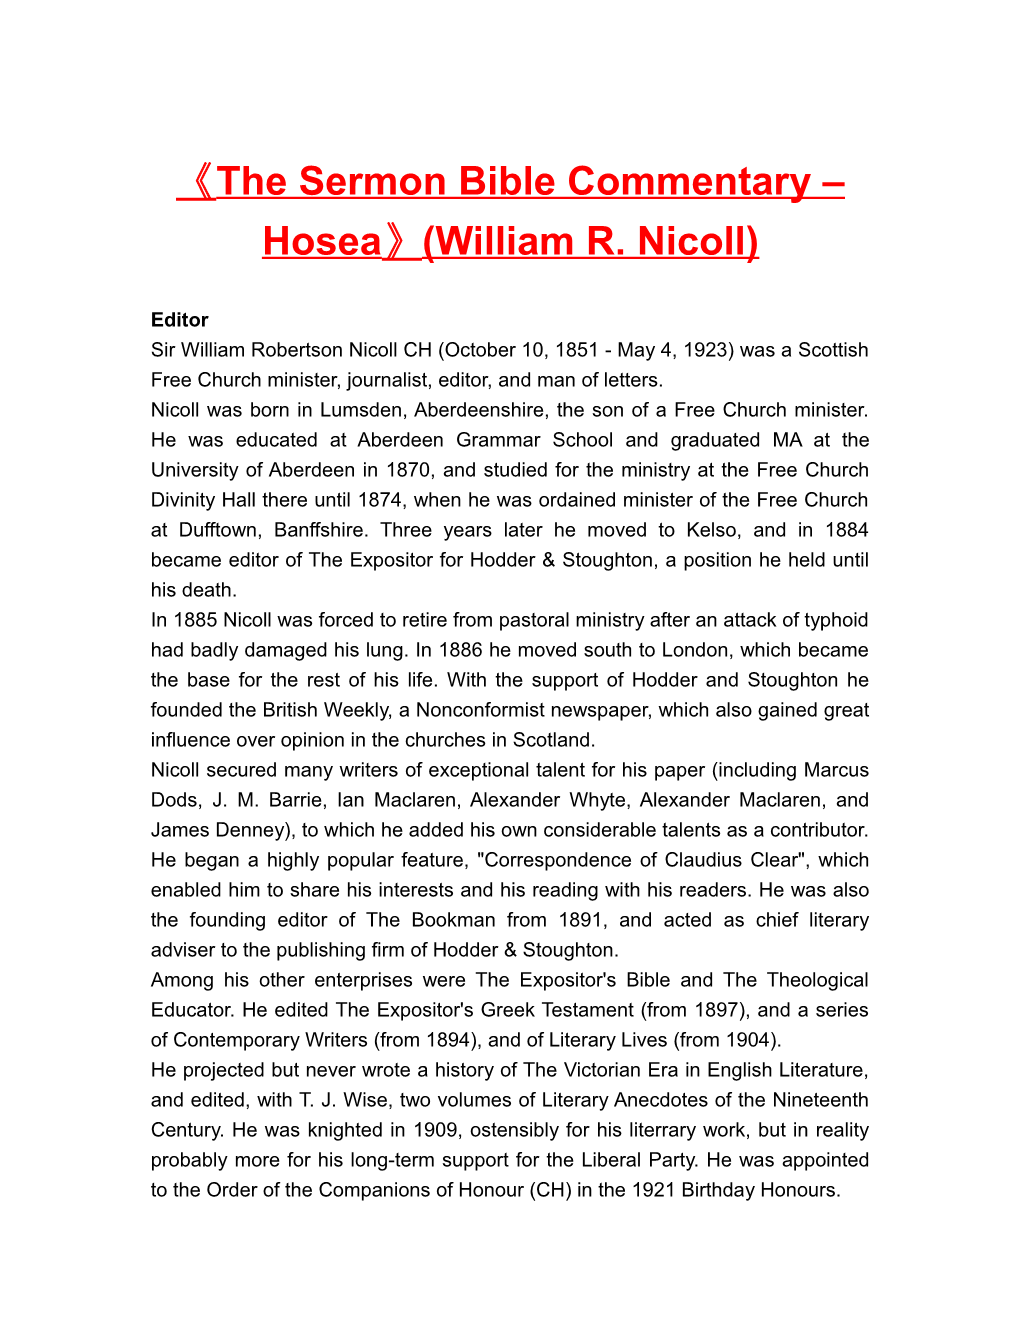 The Sermon Bible Commentary Hosea (William R. Nicoll)